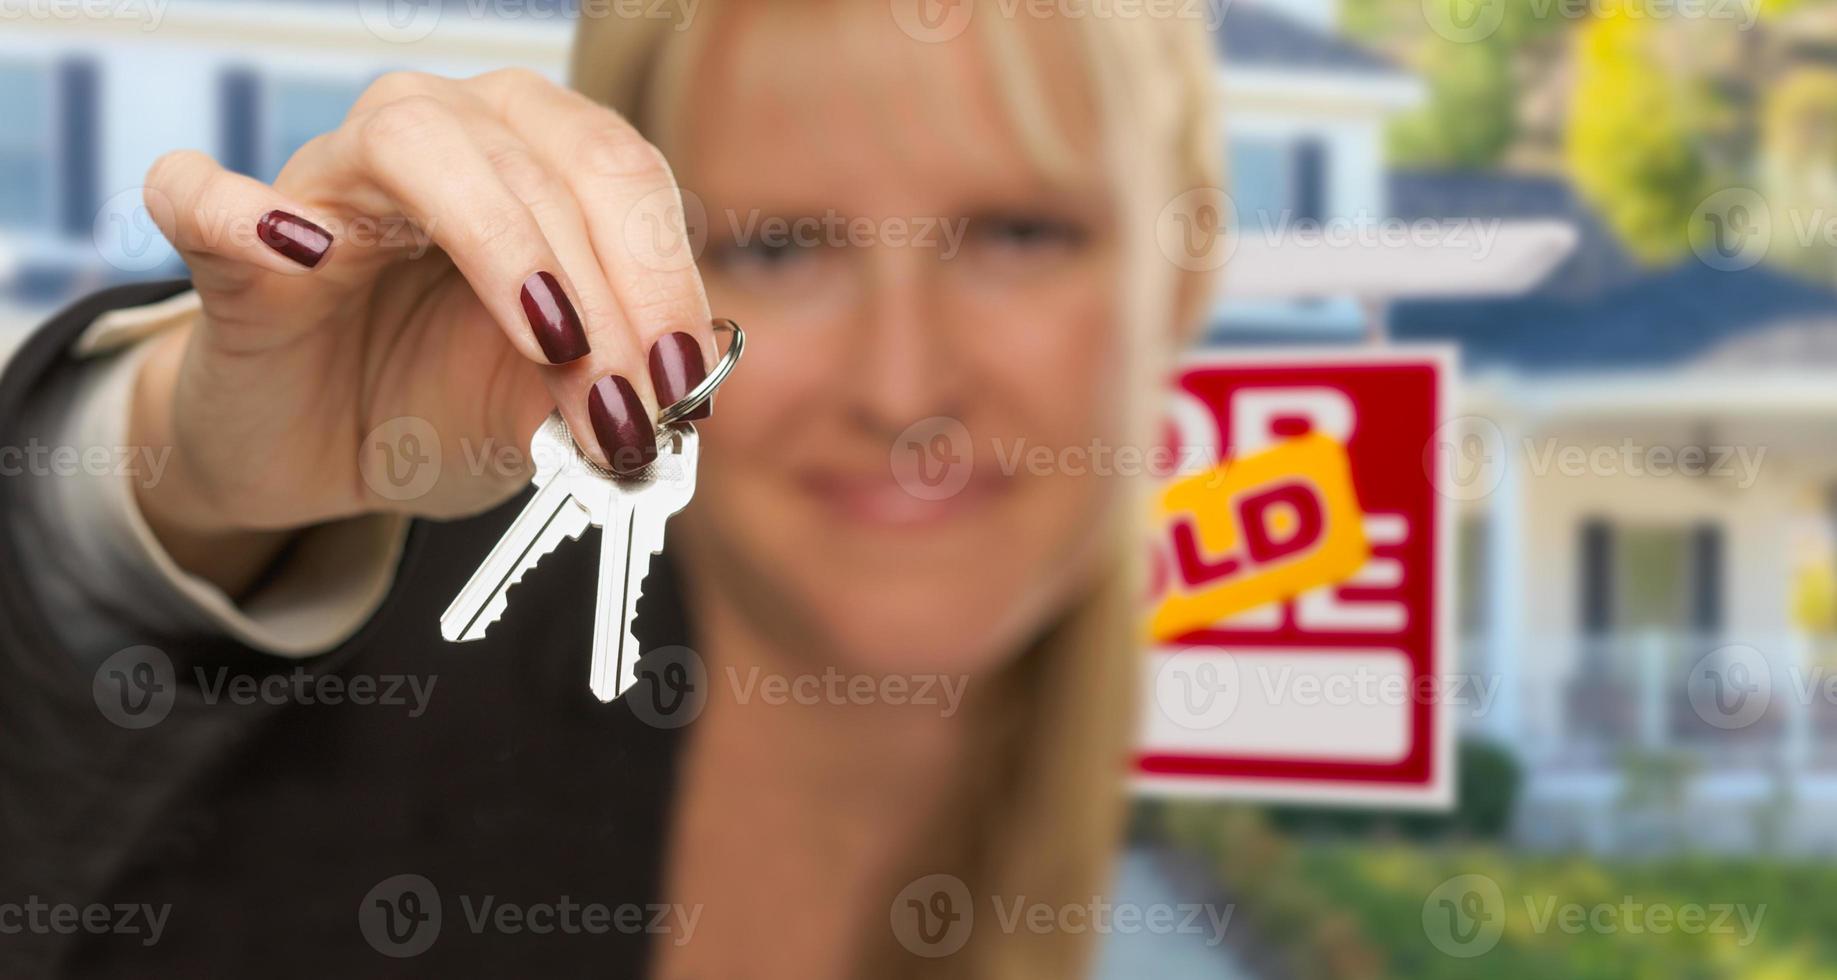 immobilienmakler überreicht neue hausschlüssel mit verkauftem schild dahinter foto